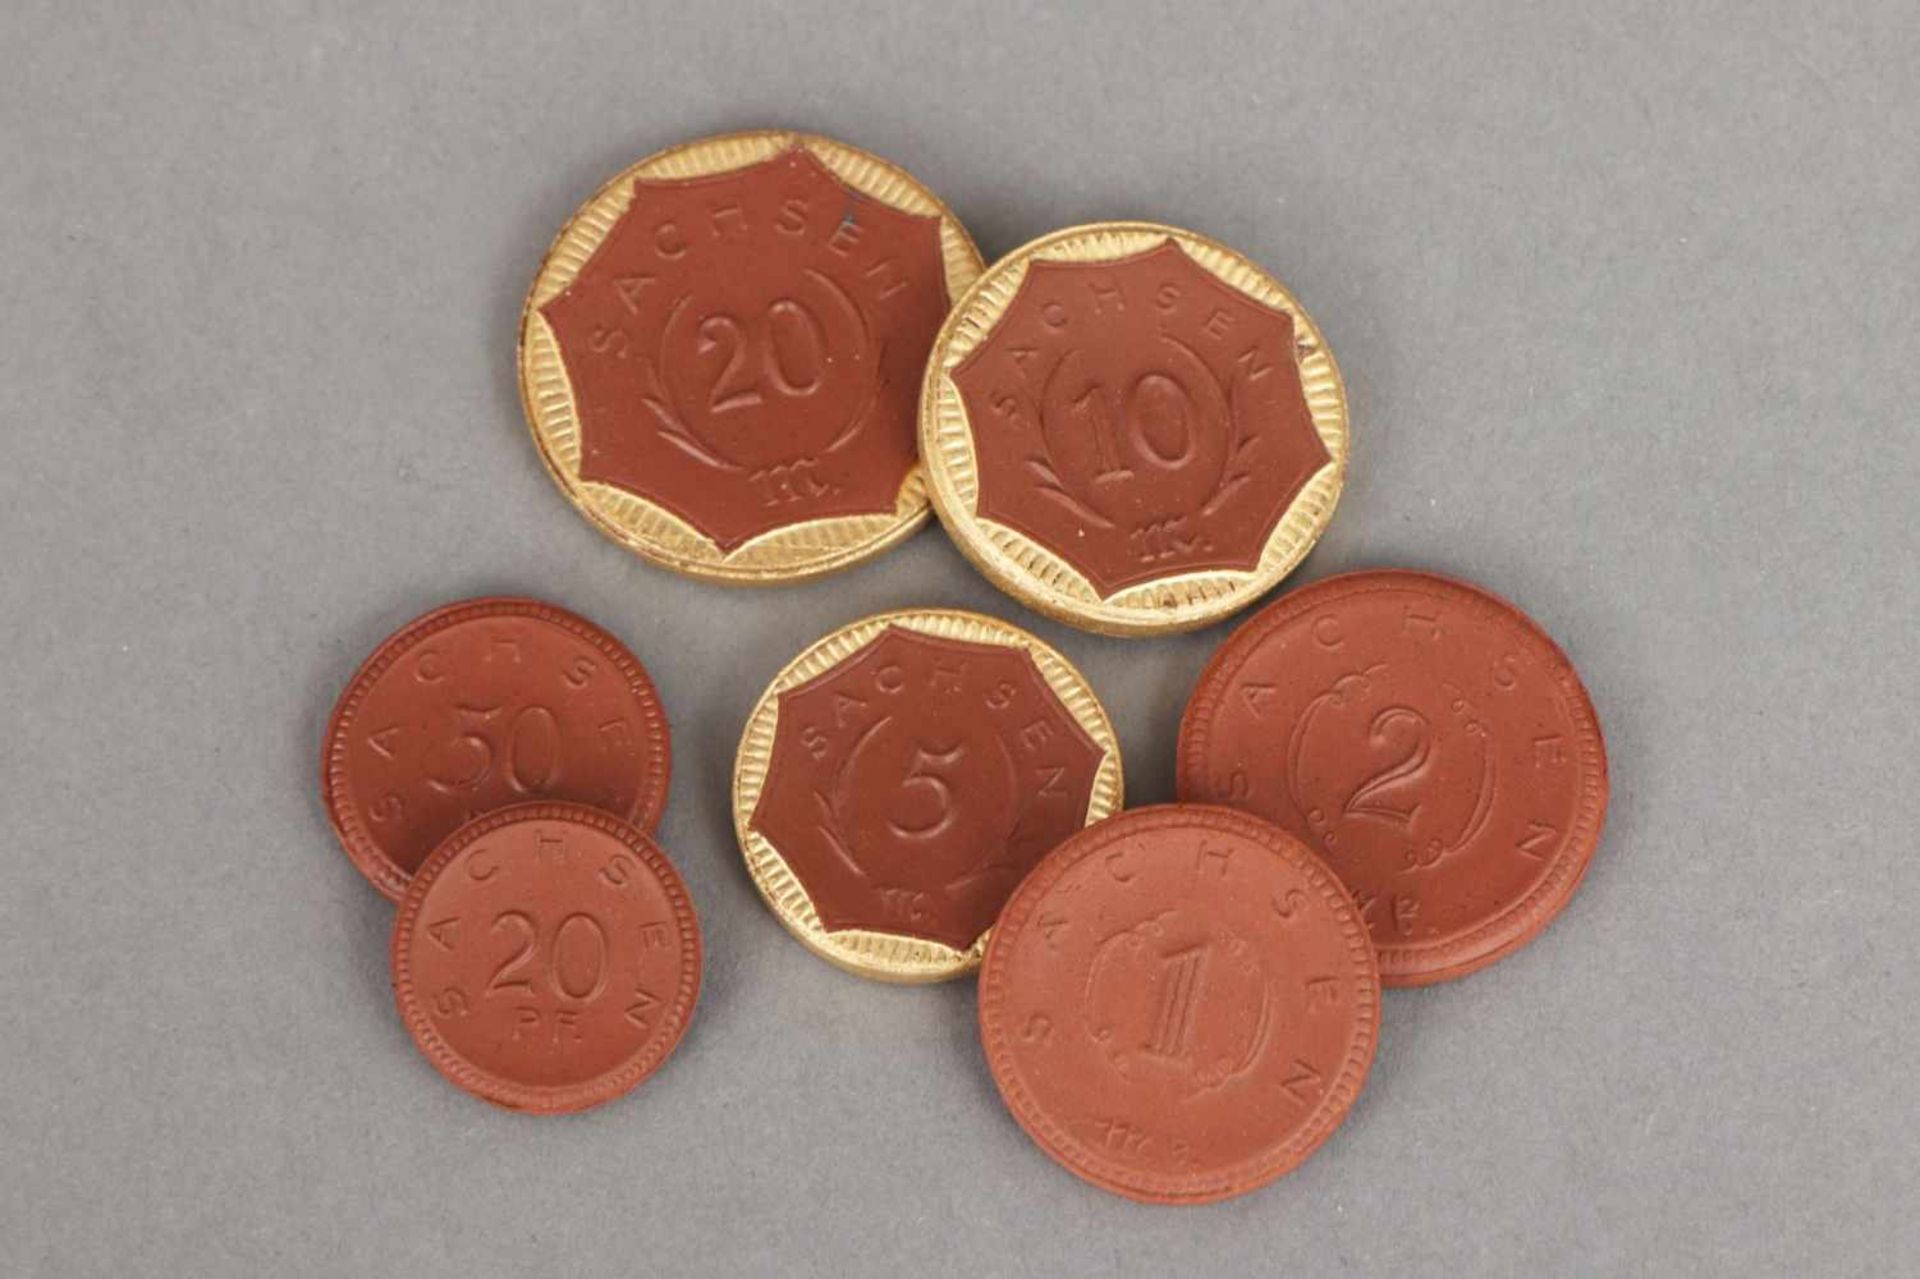 Sammlung MEISSEN ¨Sachsen-Taler¨um 1921, Böttger-Steinzeug, 7 Münzen mit Prägemotiven, z.T. mit - Image 2 of 4